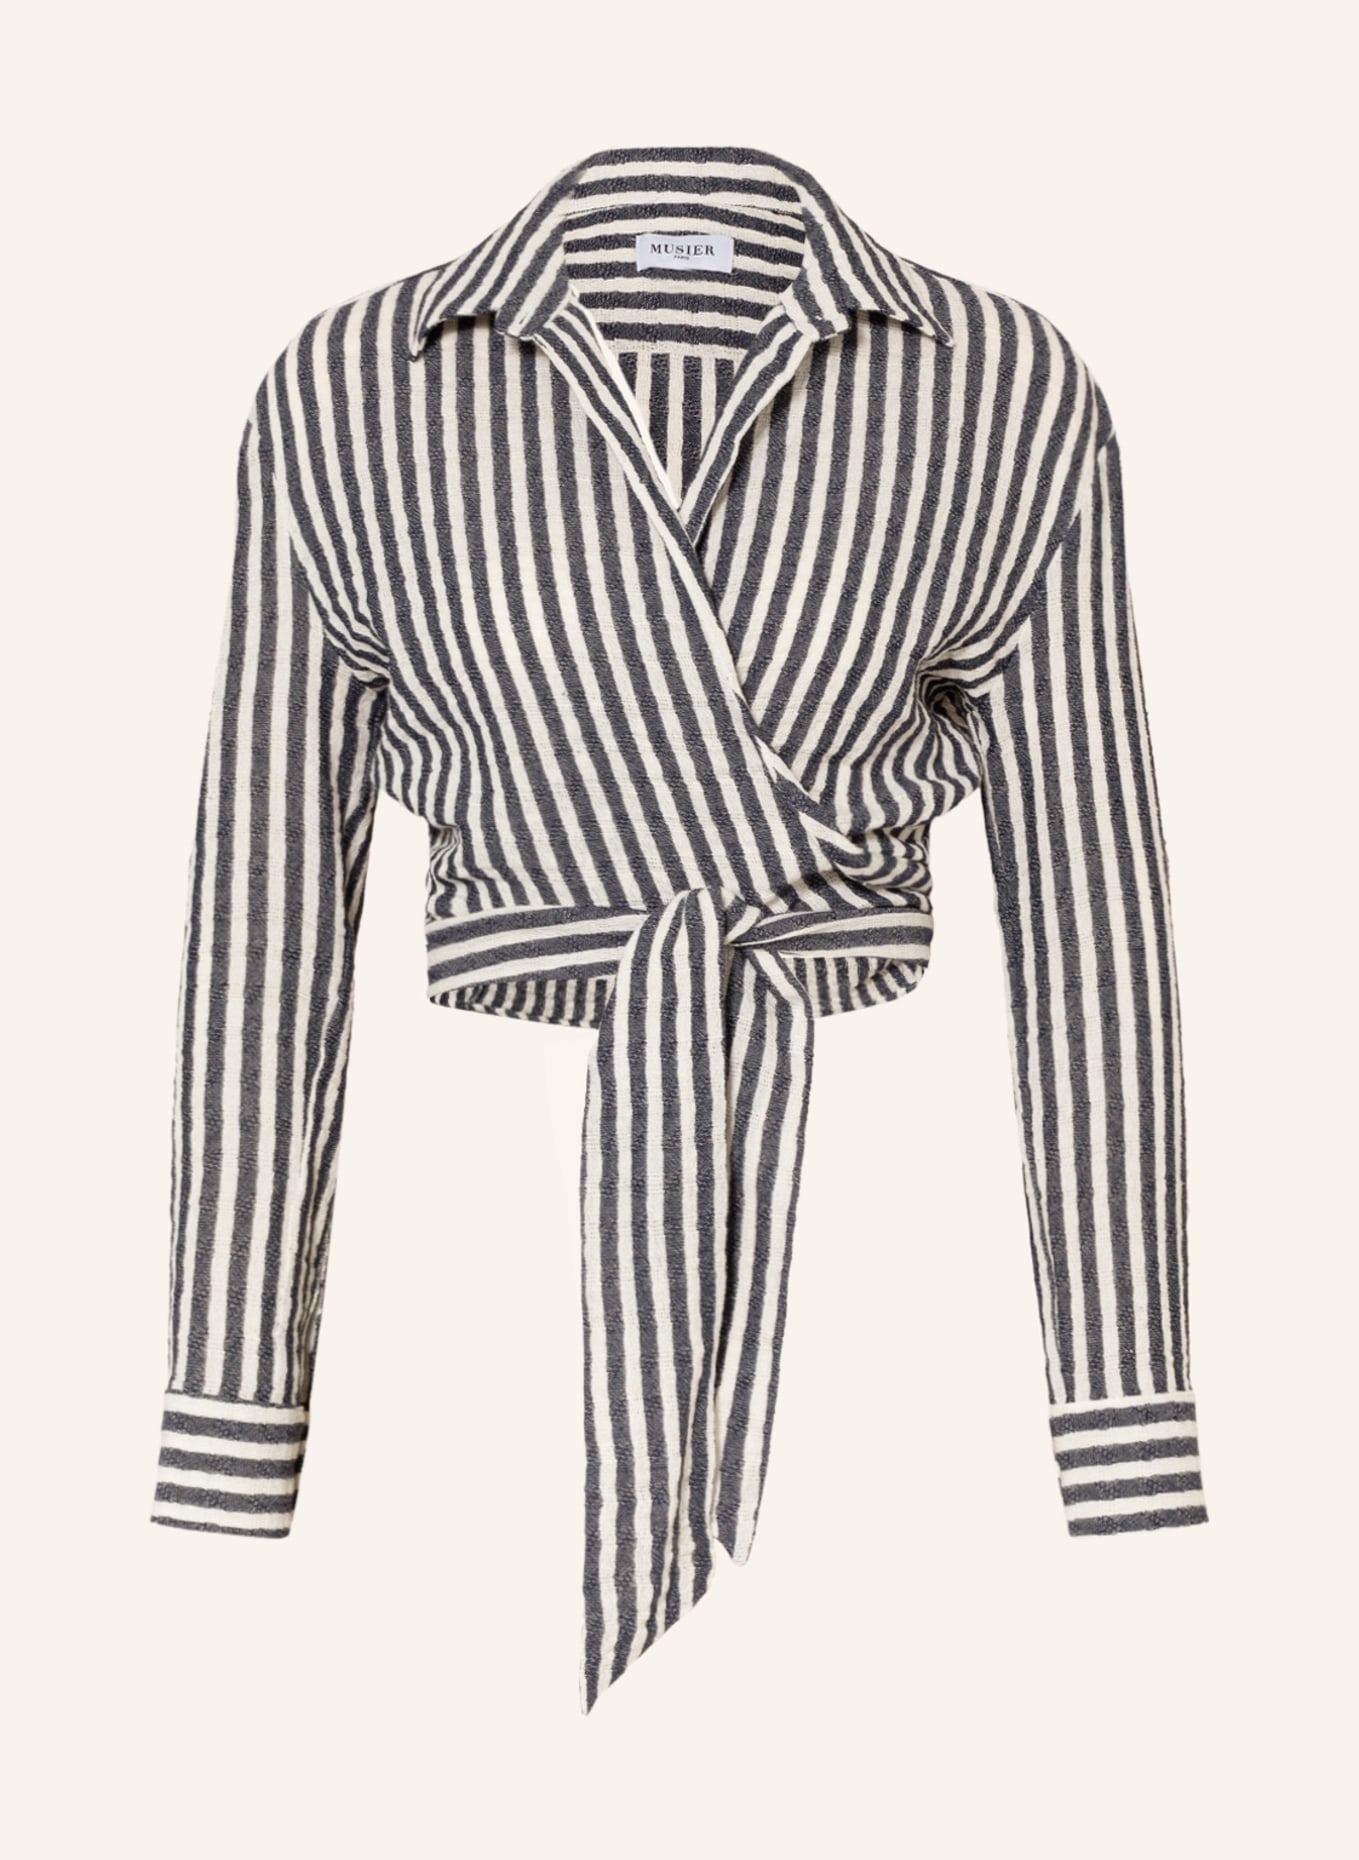 MUSIER PARIS Wrap blouse SYROS, Color: DARK BLUE/ WHITE (Image 1)